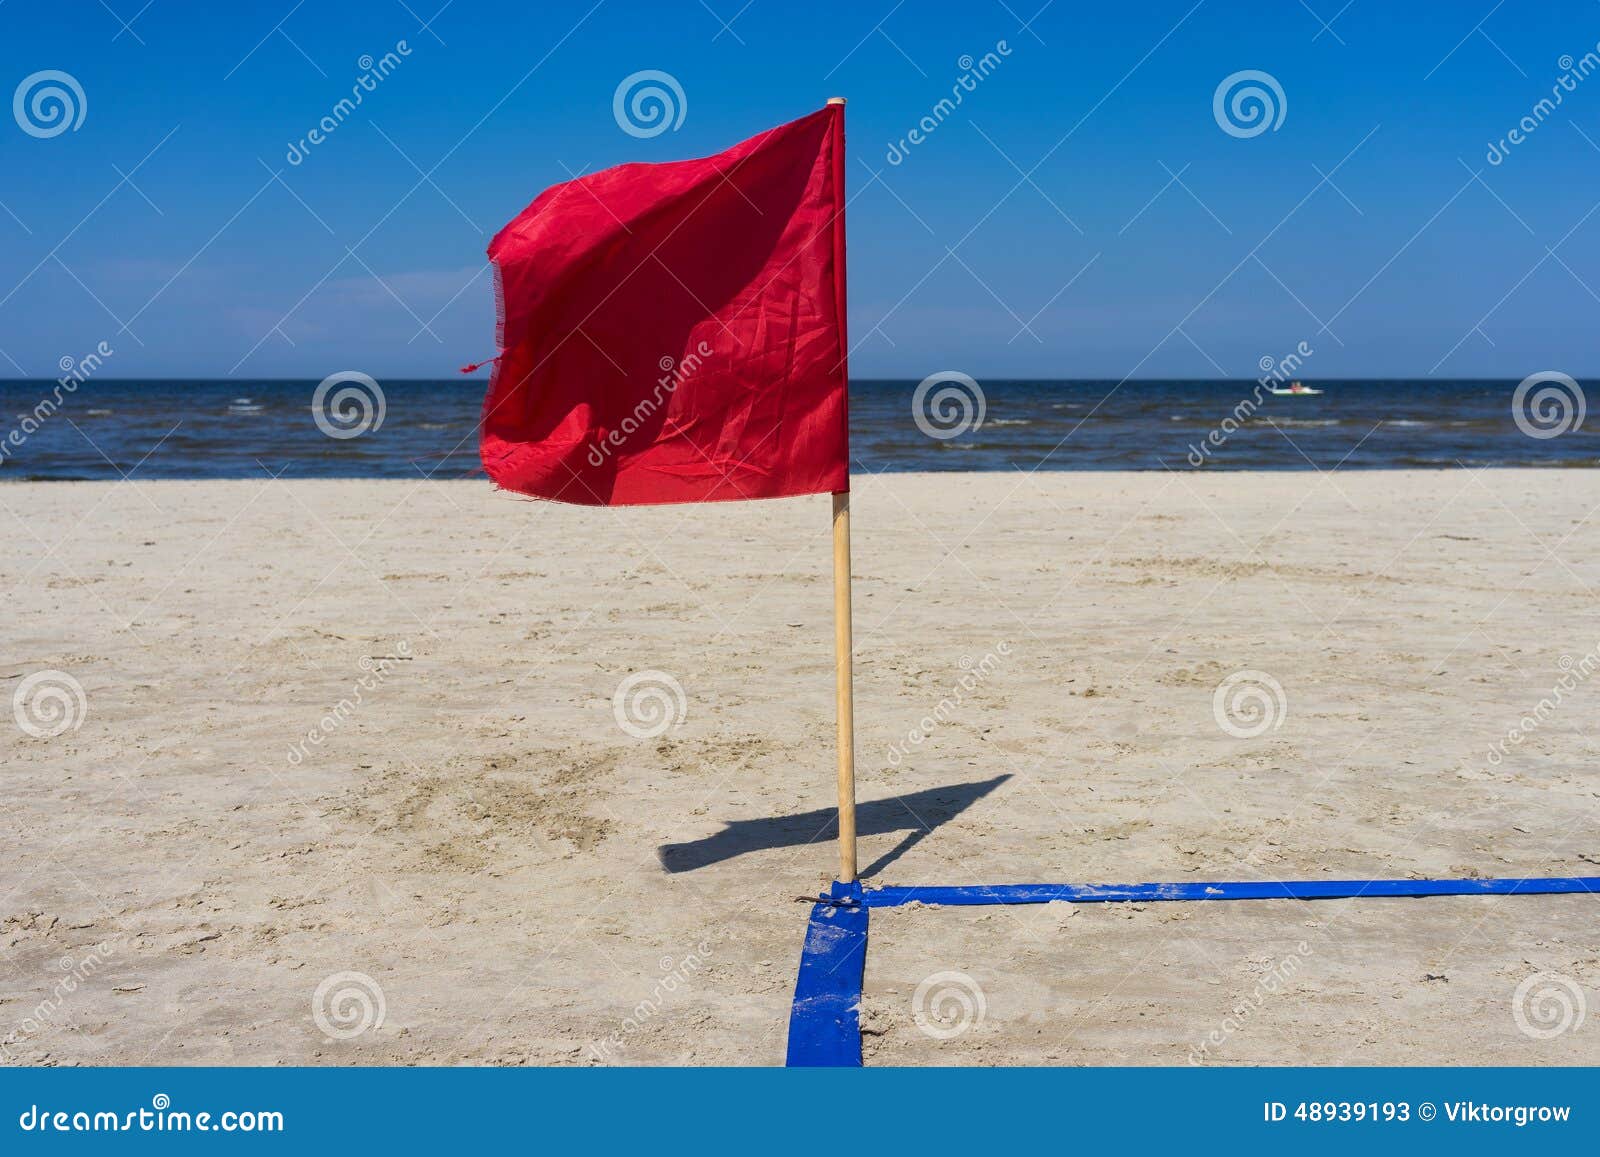 Rote Fahne Im Wind Auf Dem Sandigen Strand Stockbild - Bild von